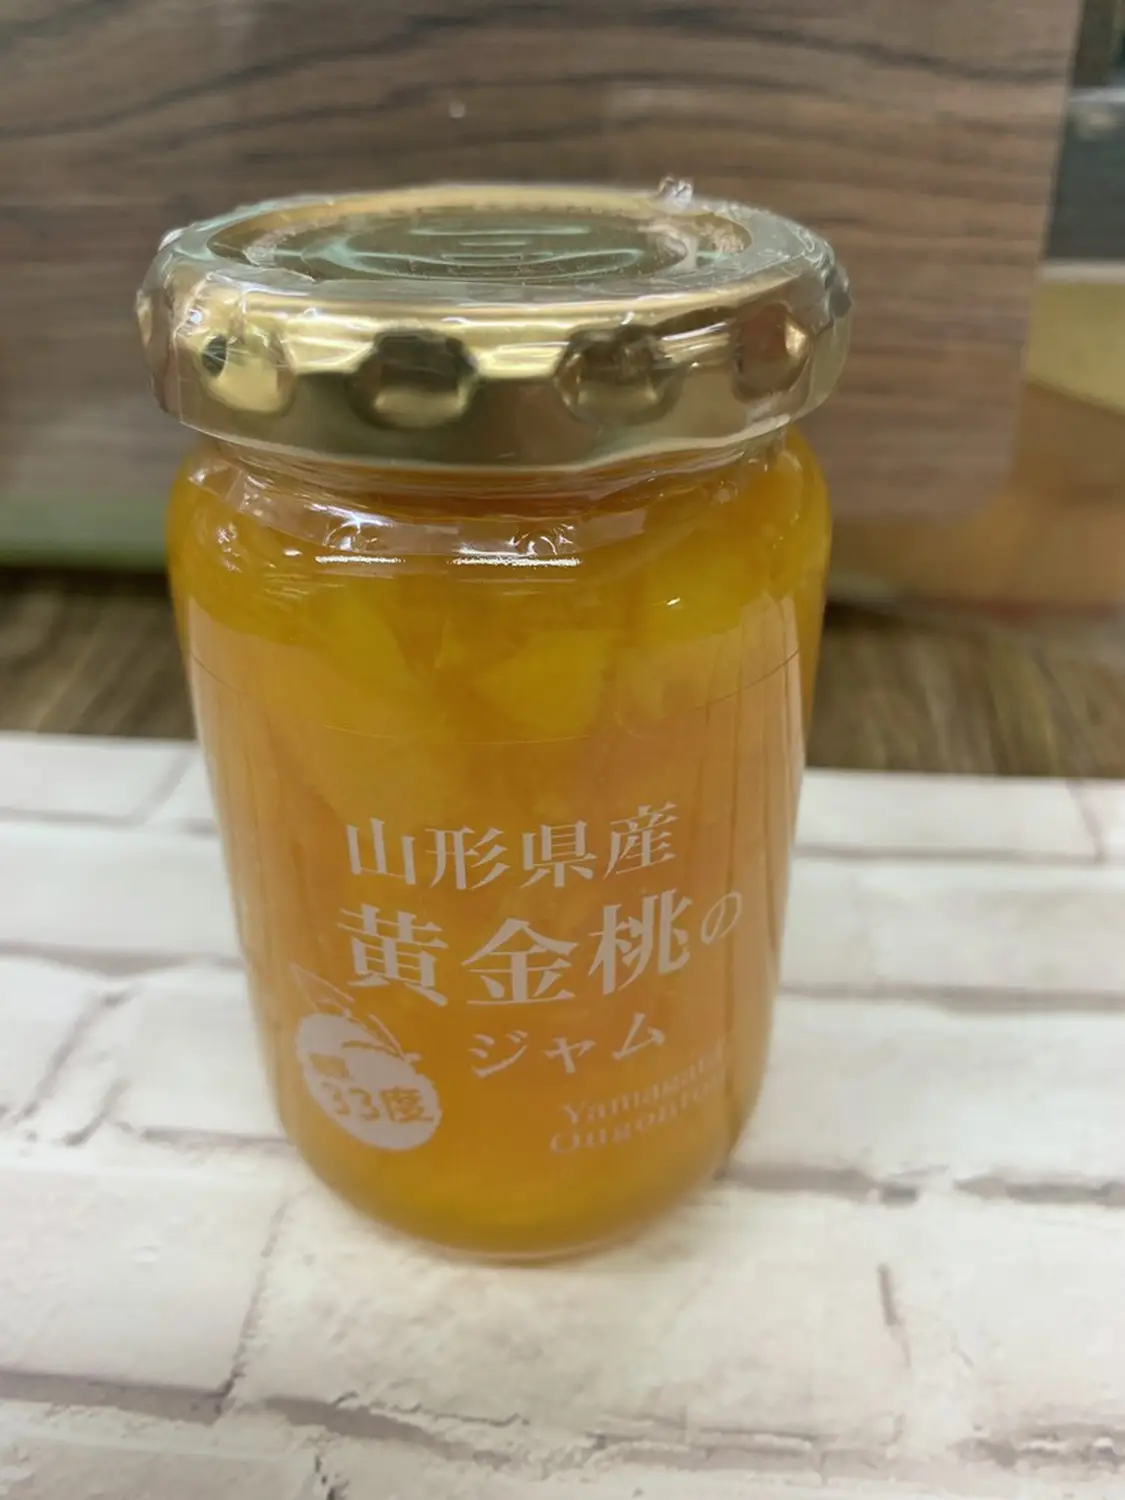 期間限定送料無料 伊豆フェルメンテ 山形産黄金桃のジャム 180g × 3瓶